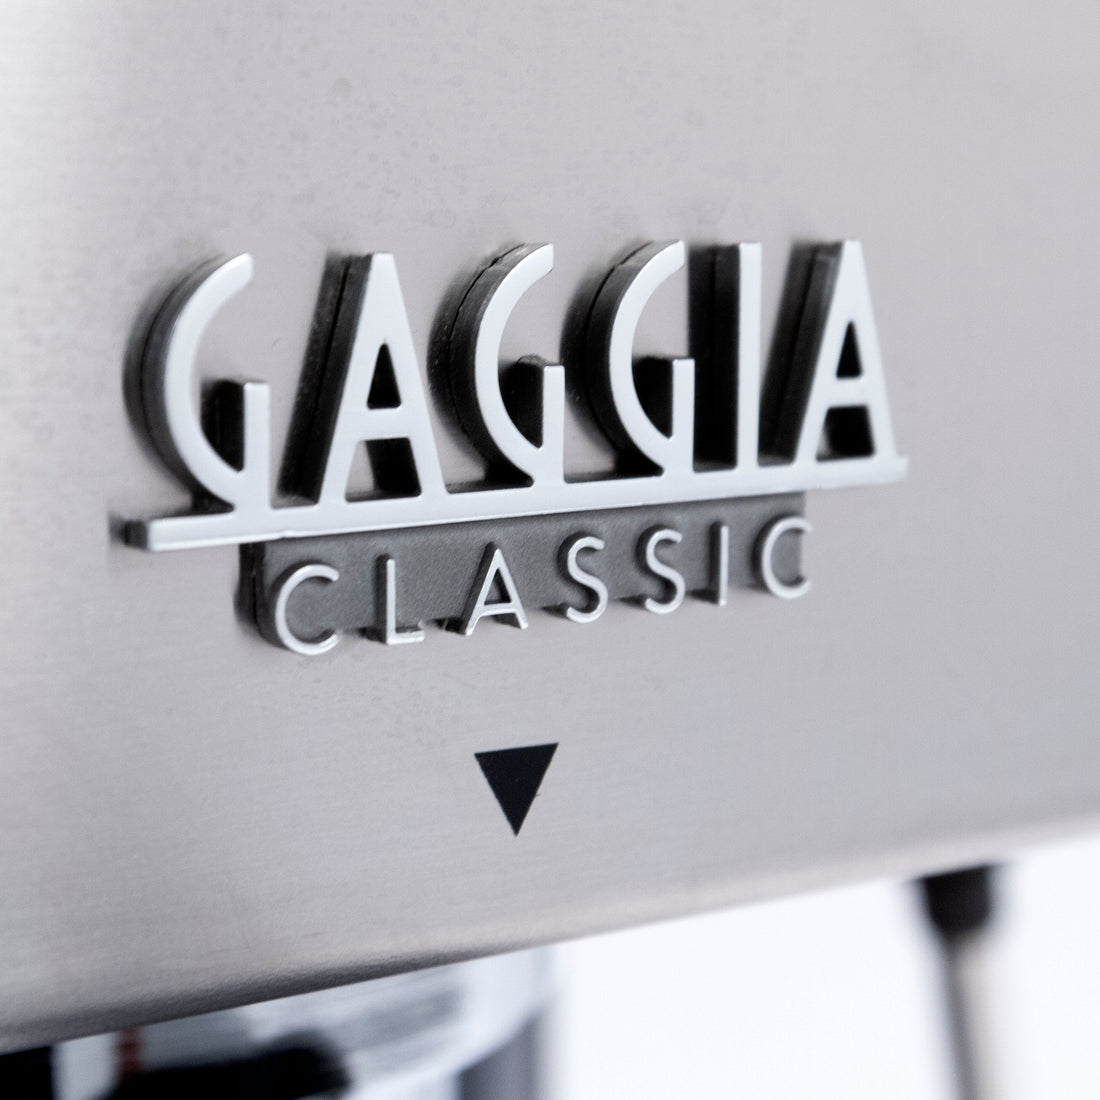 Refurbished Gaggia Classic Evo Pro Semi-Automatic Espresso Machine